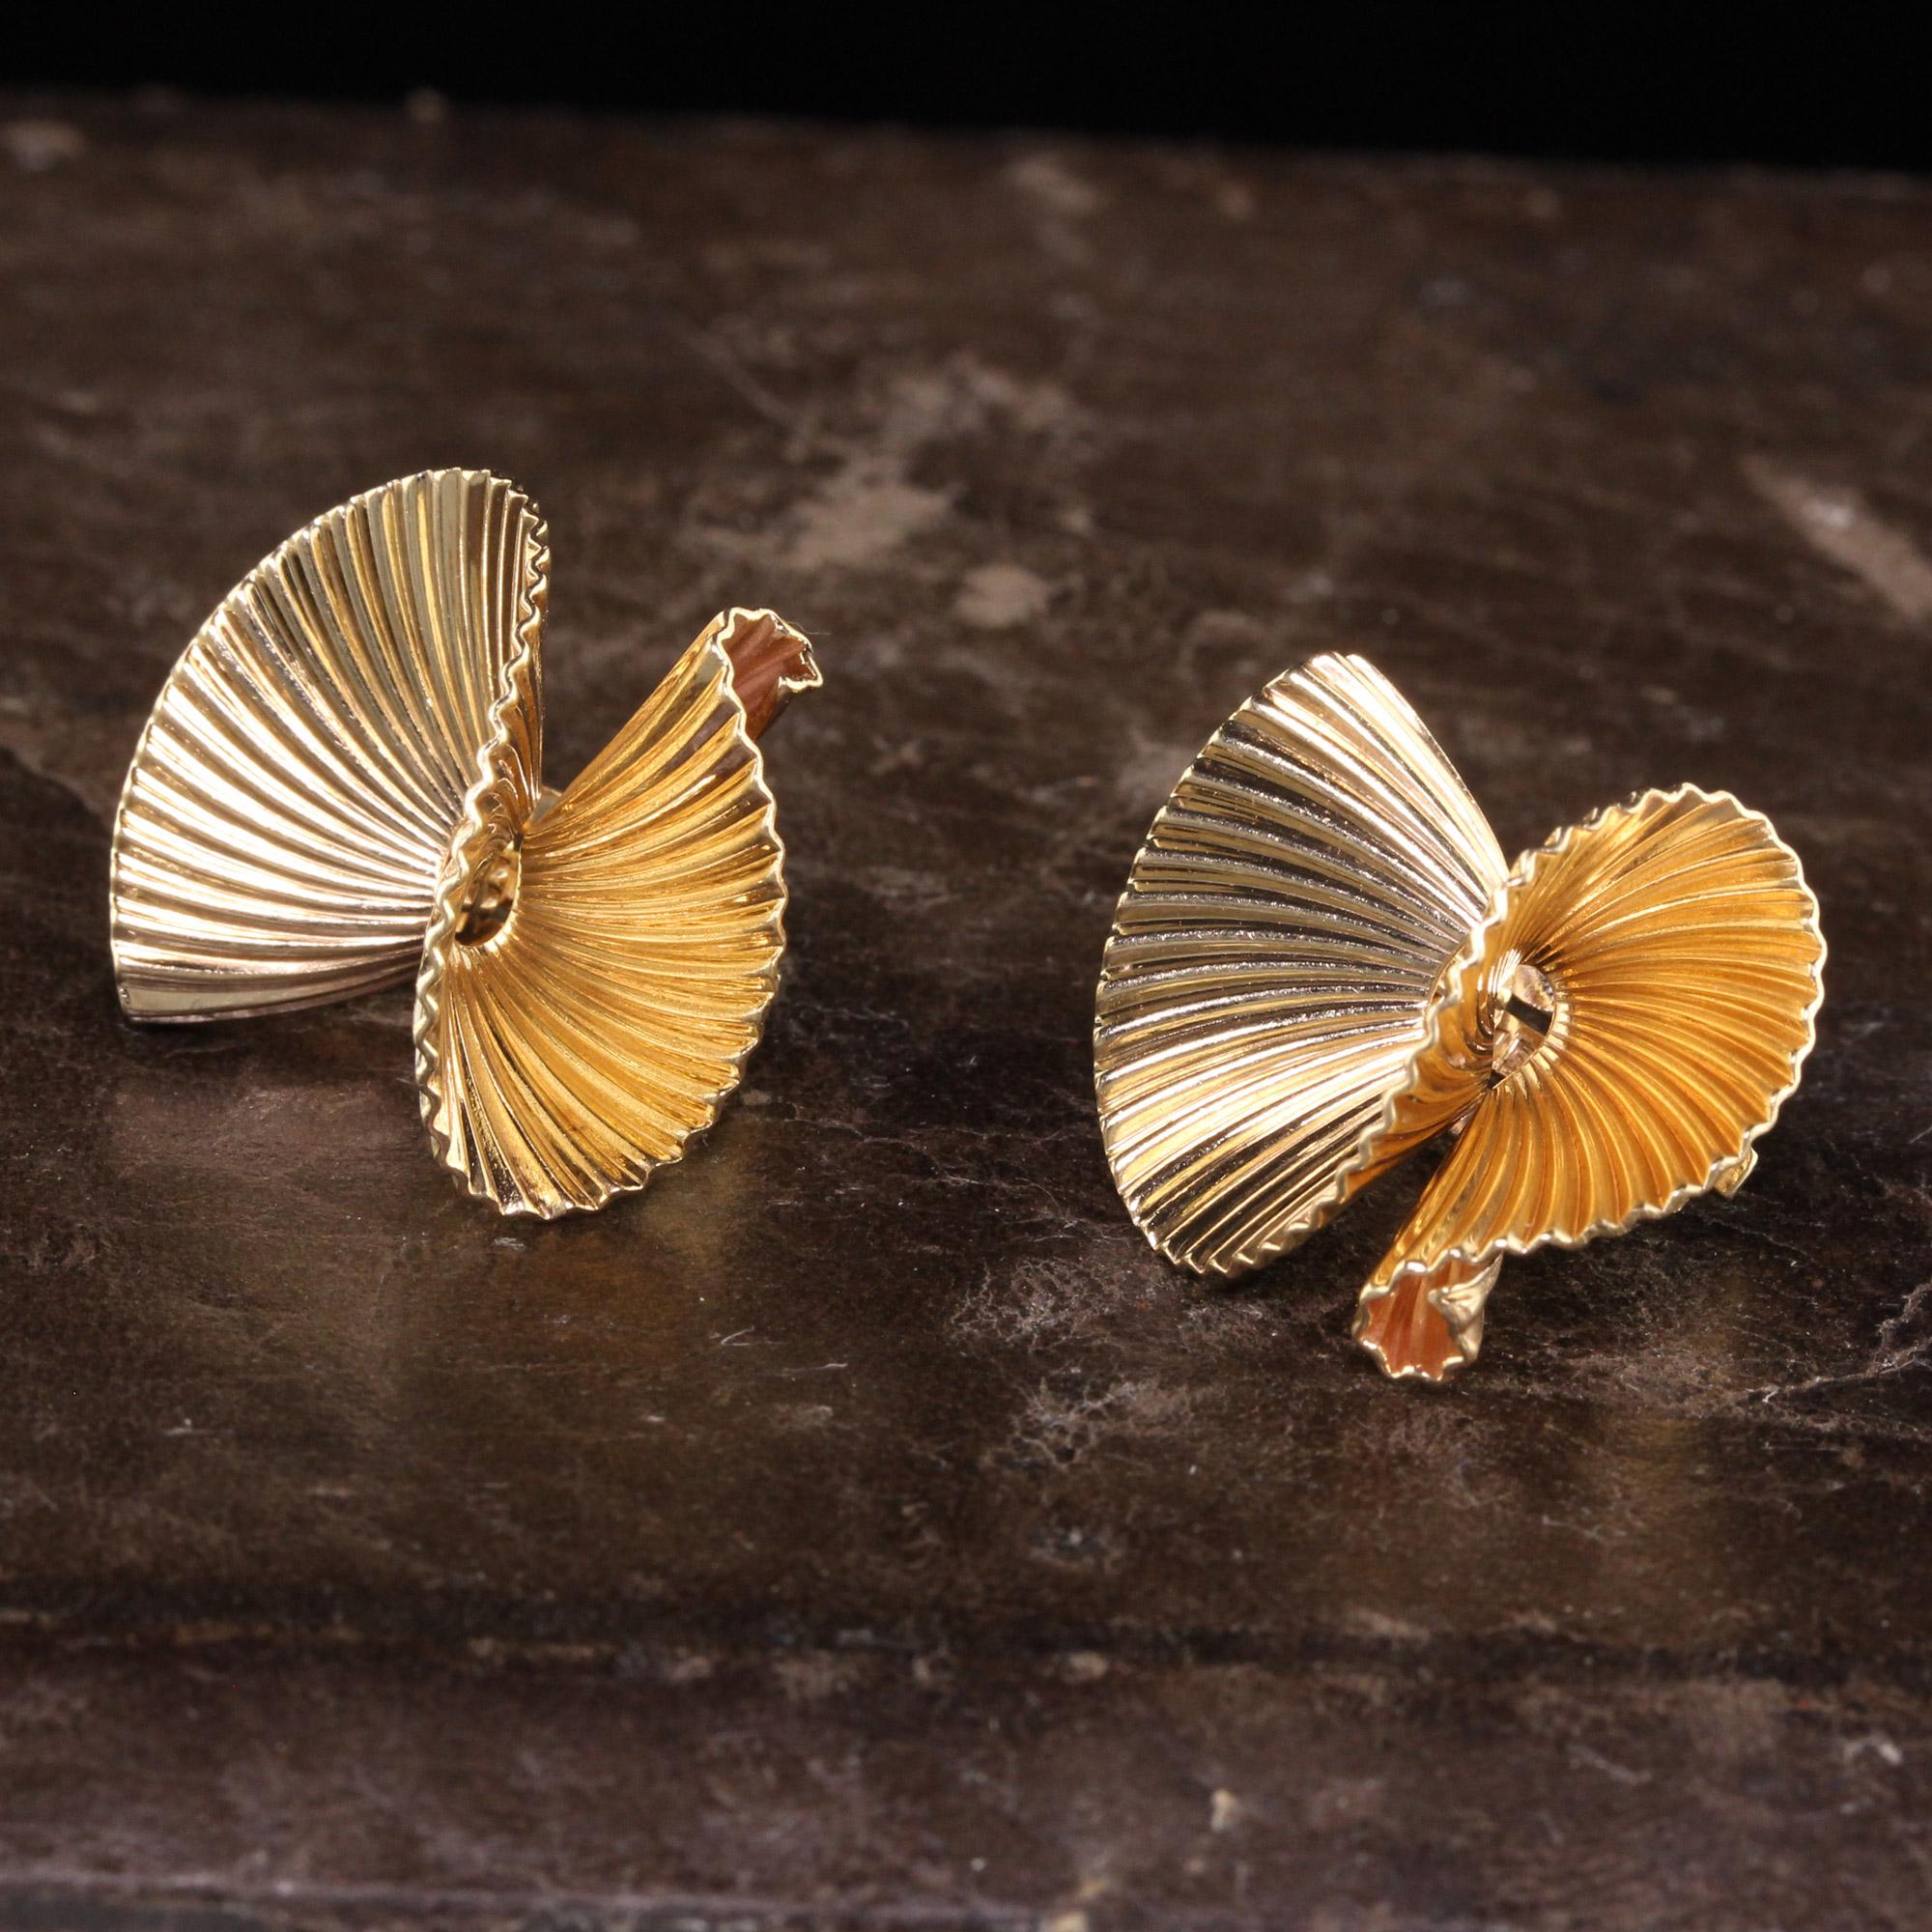 Schöne Retro Vintage Tiffany & Co 14K Gelbgold Fabric Design Ohrringe. Diese schönen Retro-Ohrringe von Tiffany and Co sind aus 14 Karat Gelbgold gefertigt und haben ein Design, das wie ein gefaltetes Band oder Stoff aussieht. Sehr gut